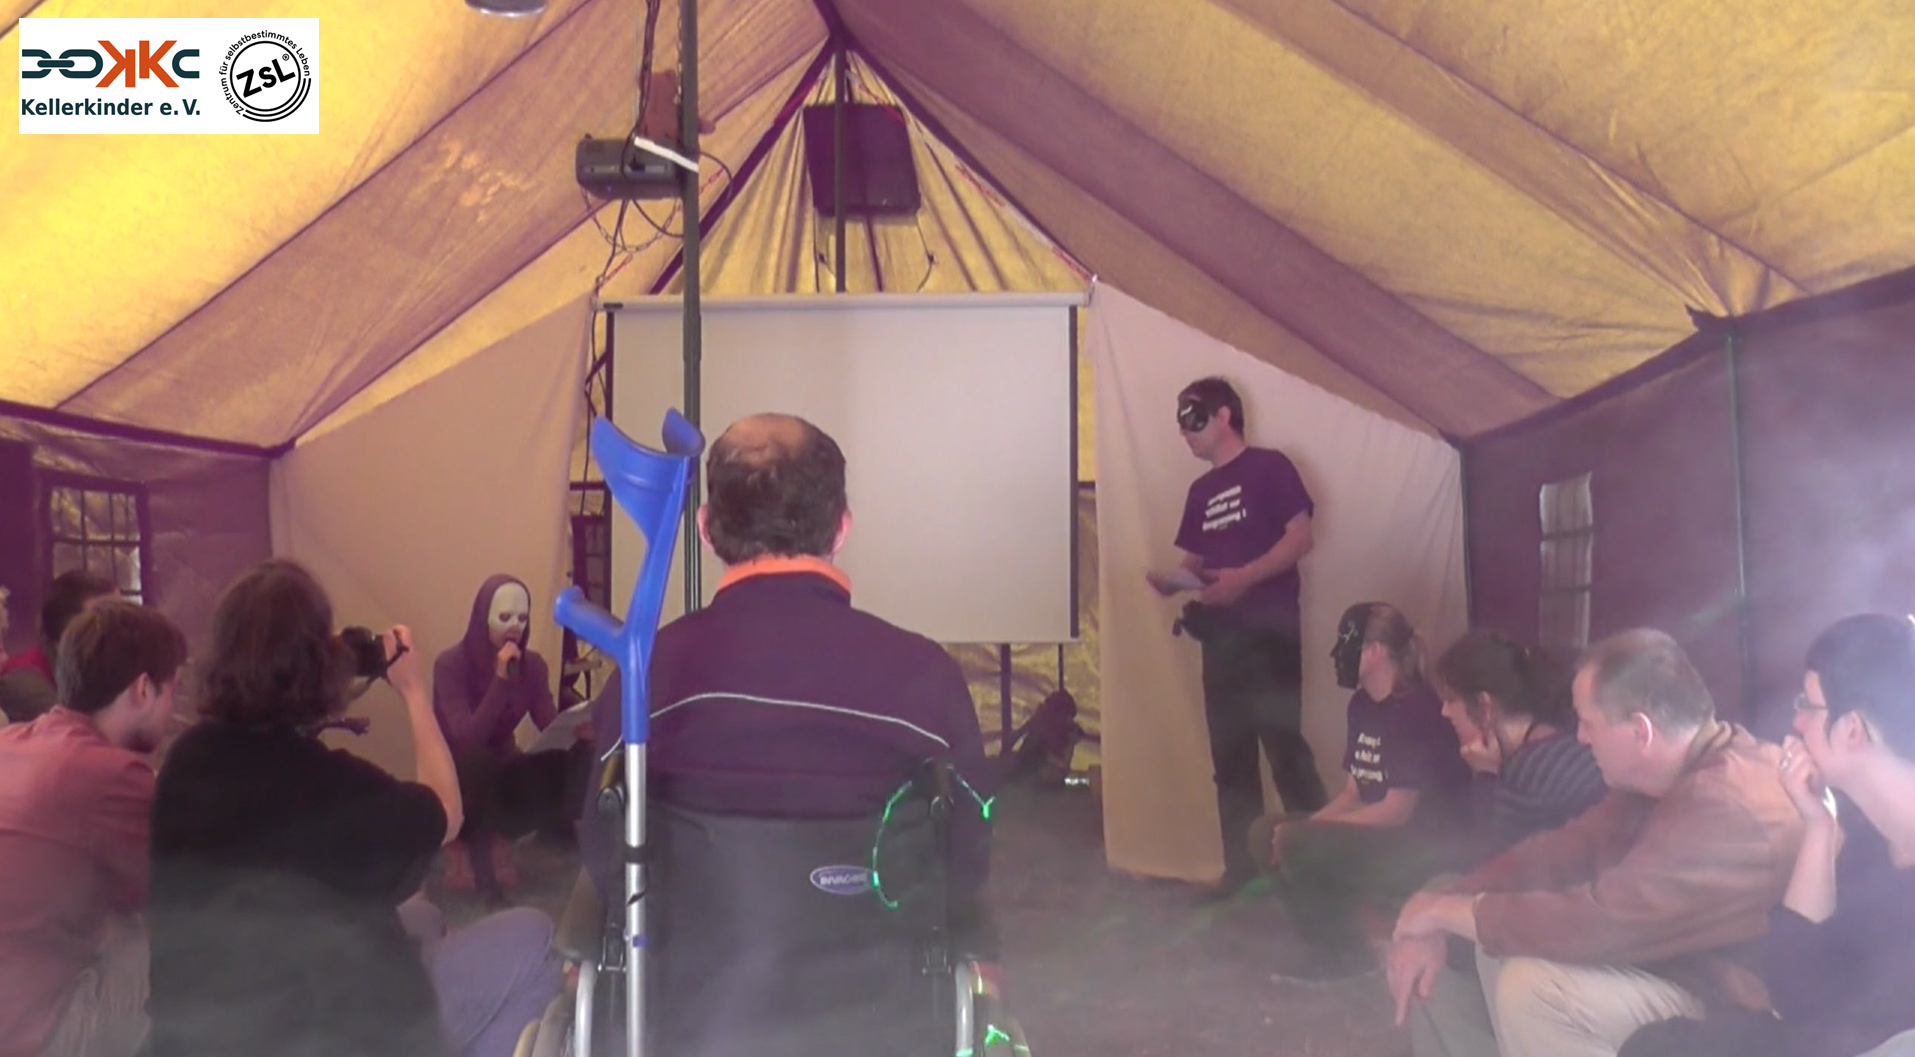 Das Innere eines Zeltes, darin ca. 12 Personen, einige tragen Masken. Eine Person hält ein Mikrofon und spricht die anderen hören zu. Das Foto ist in Farbe.